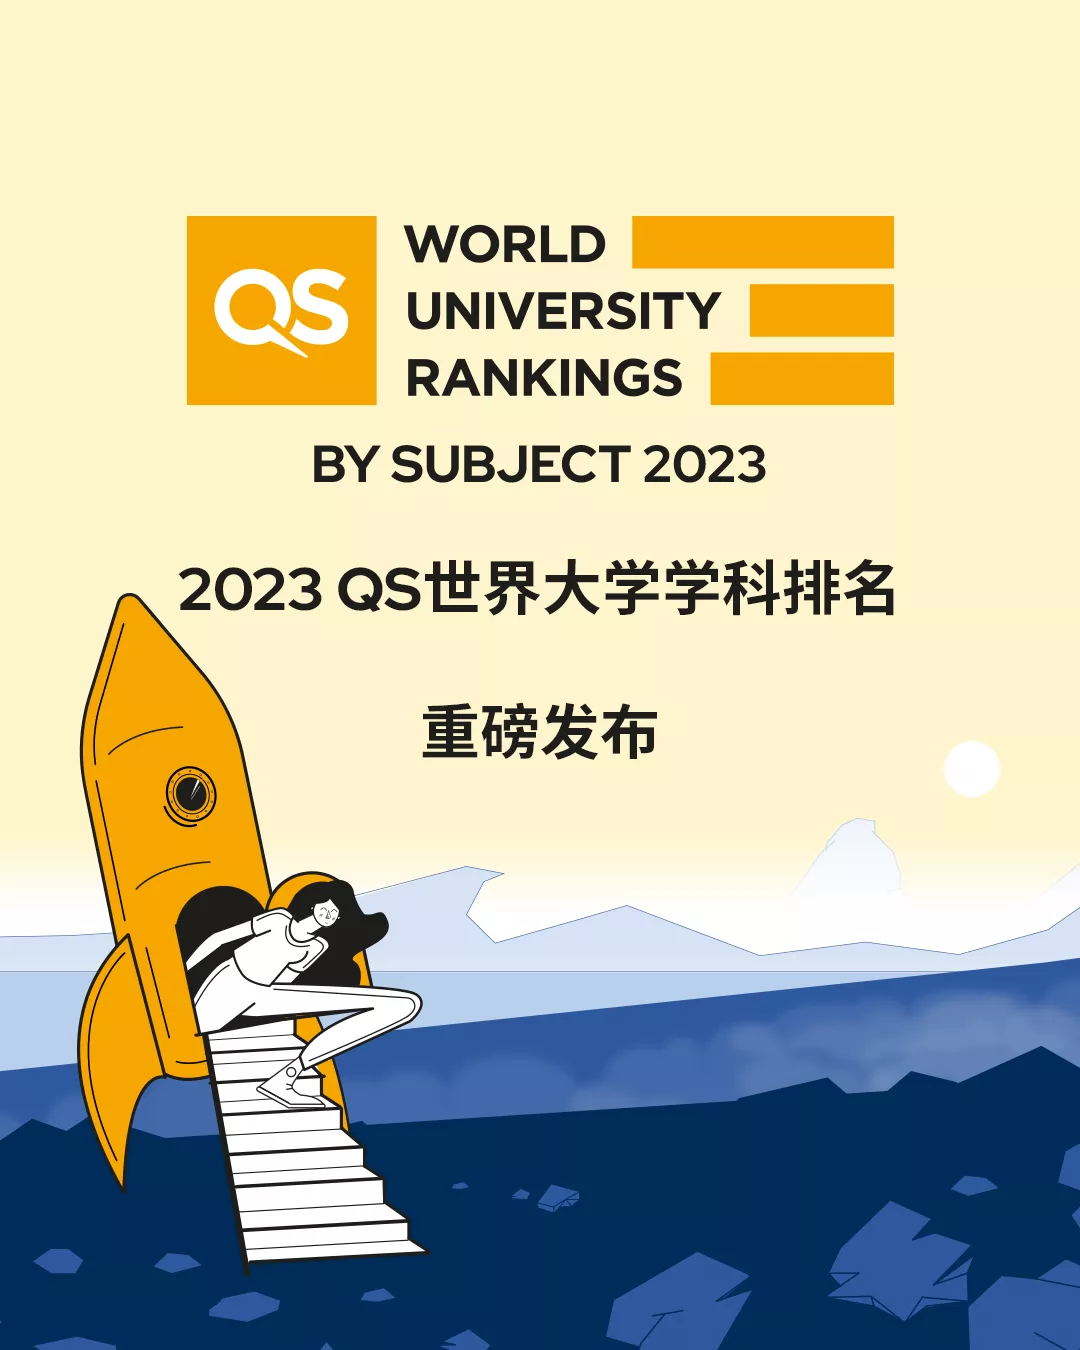 2023年QS世界大学学科排名出炉，世界上哪些大学在专业方面是最优秀的？